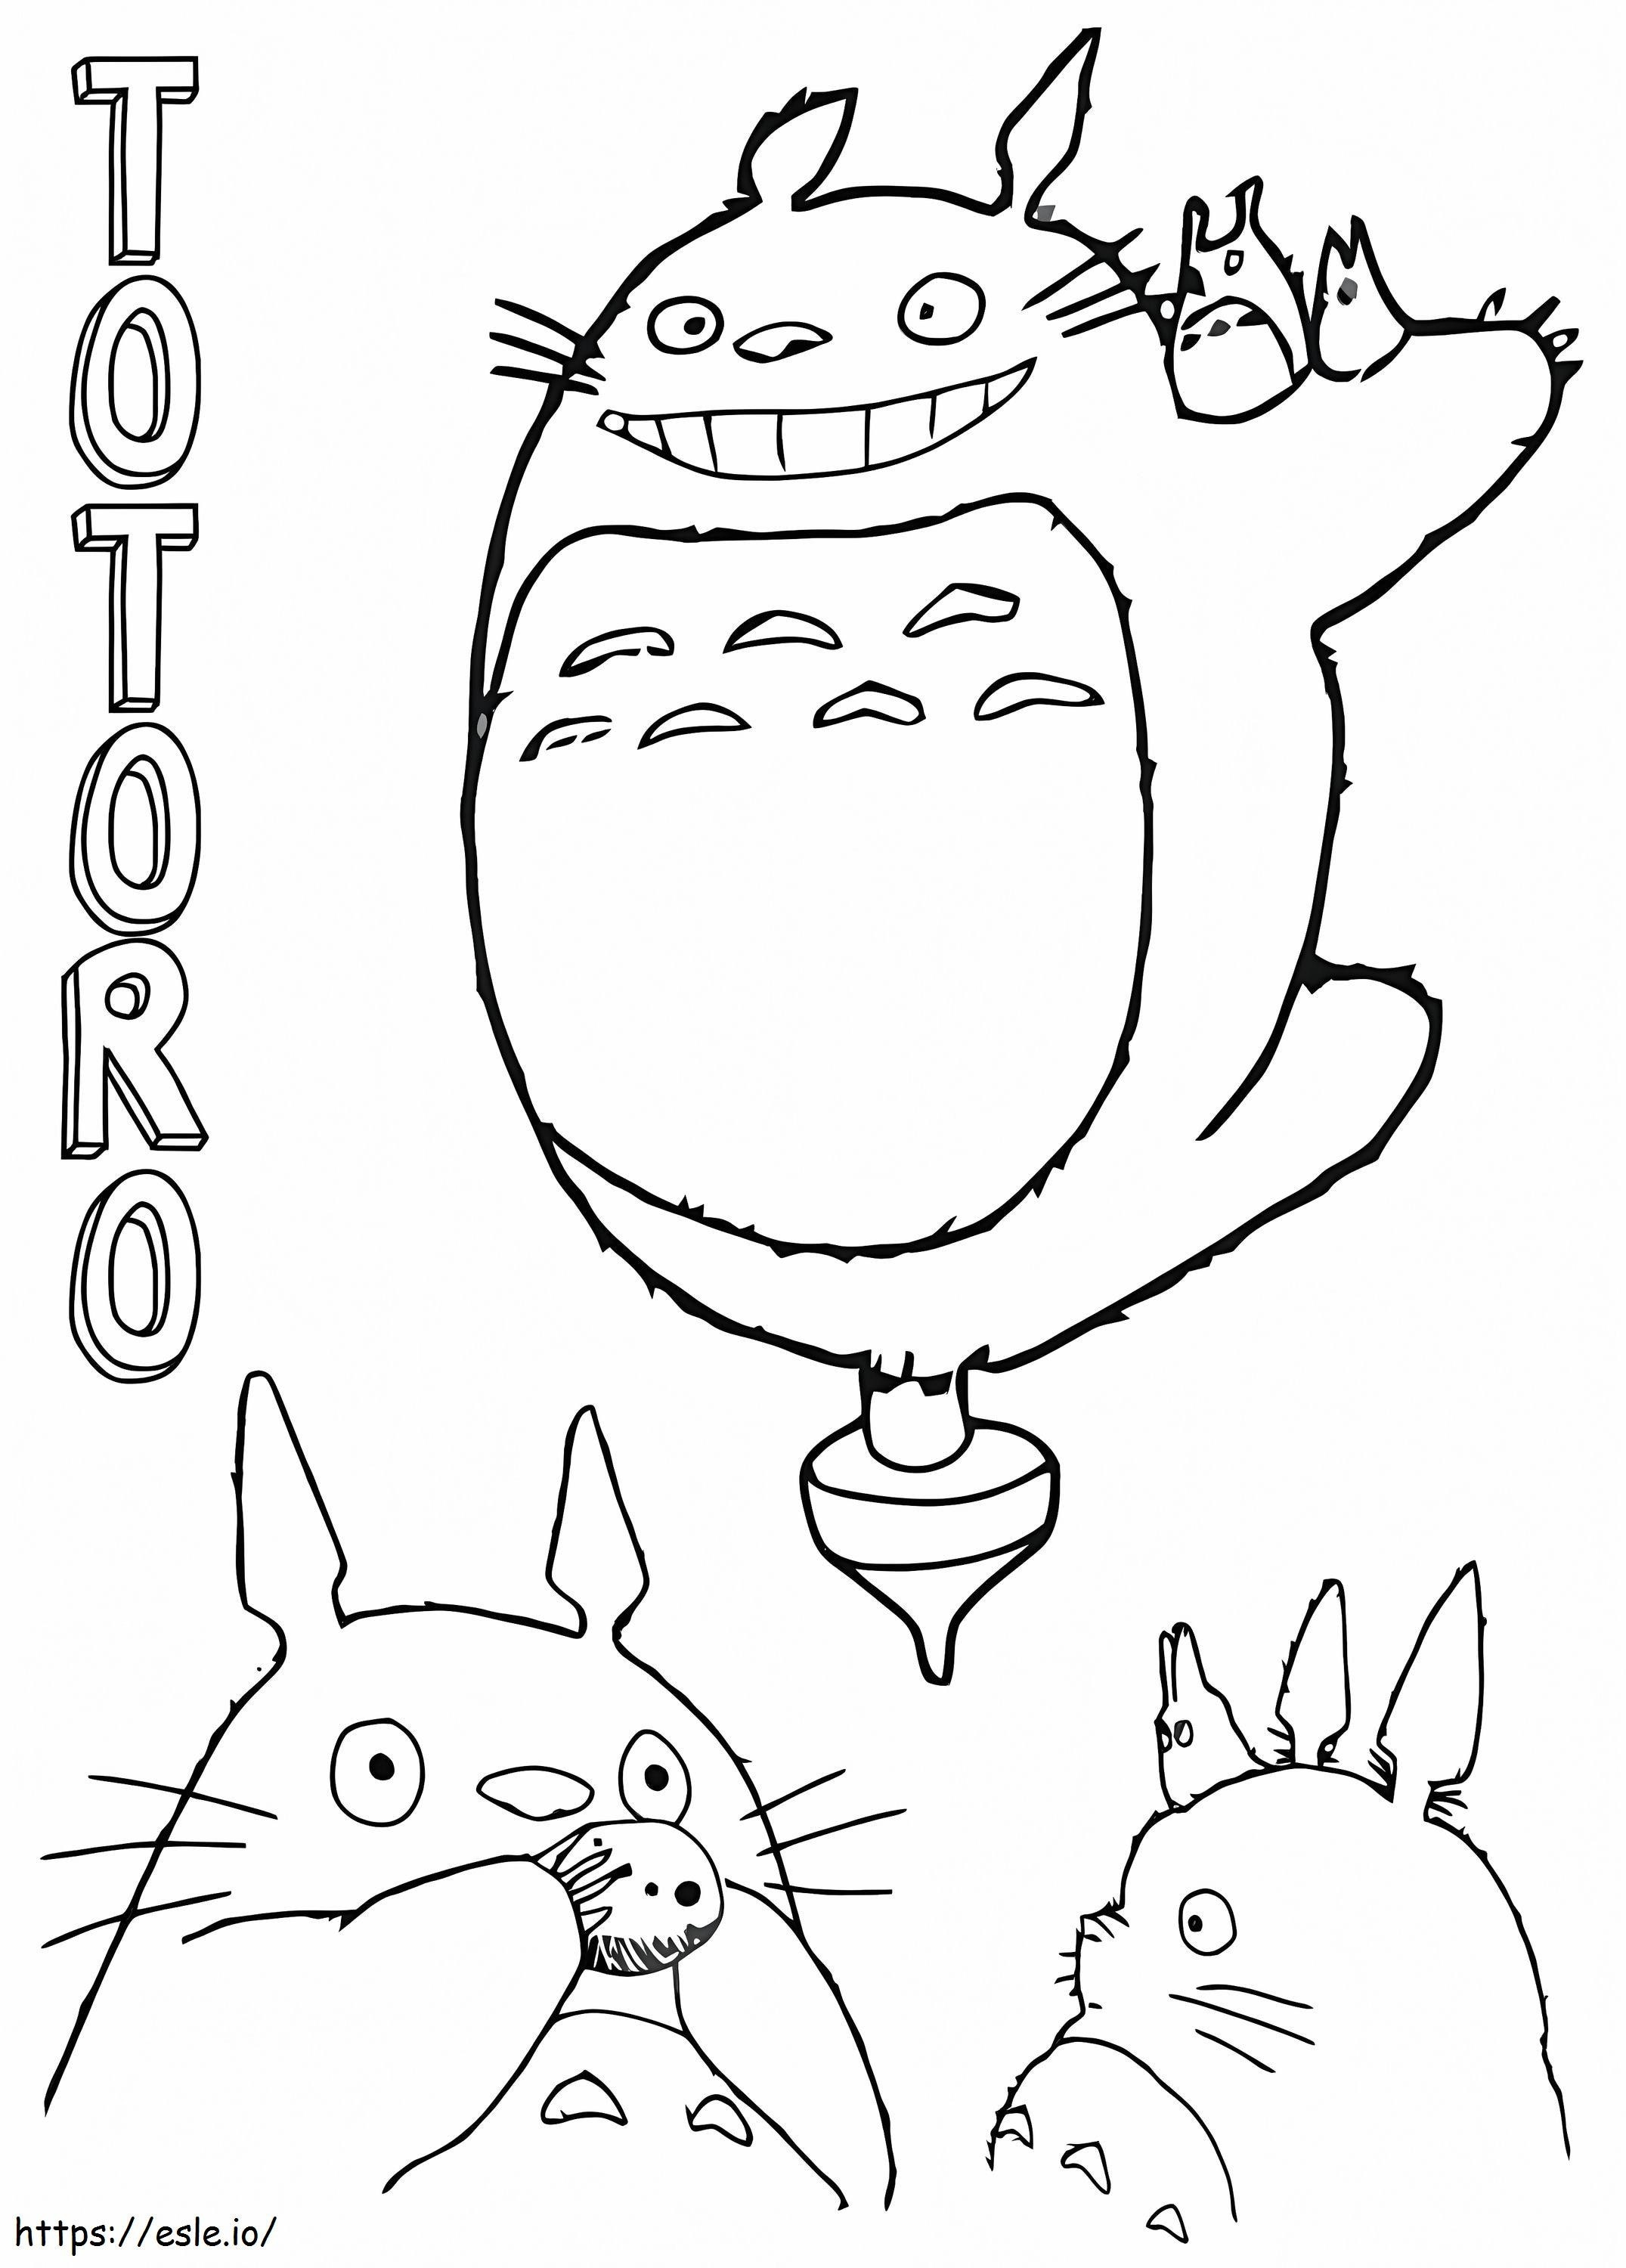 Amigável Totoro Divertido para colorir